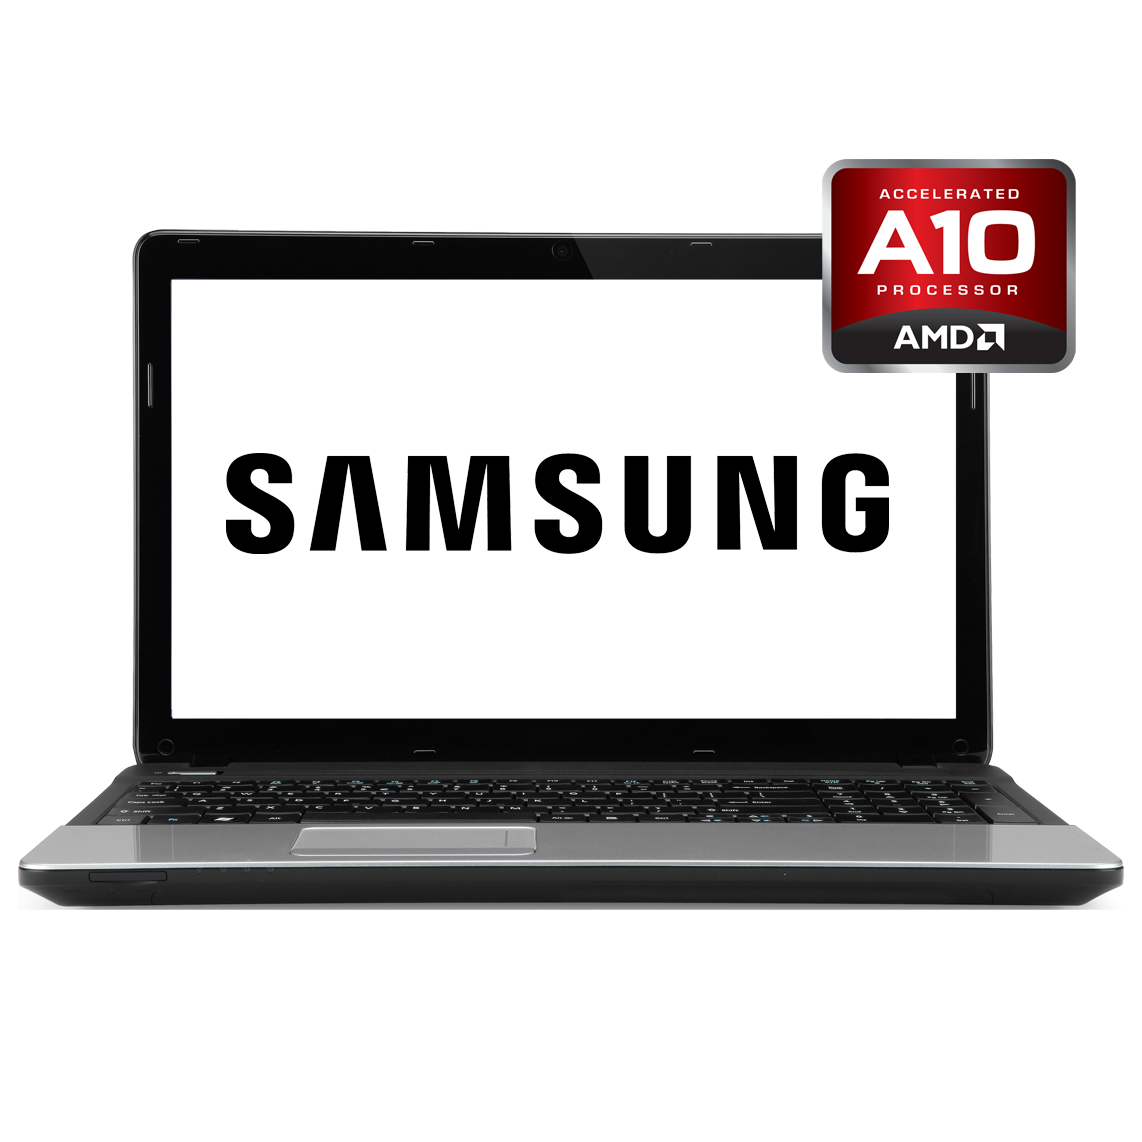 Samsung - 17.3 inch AMD A10